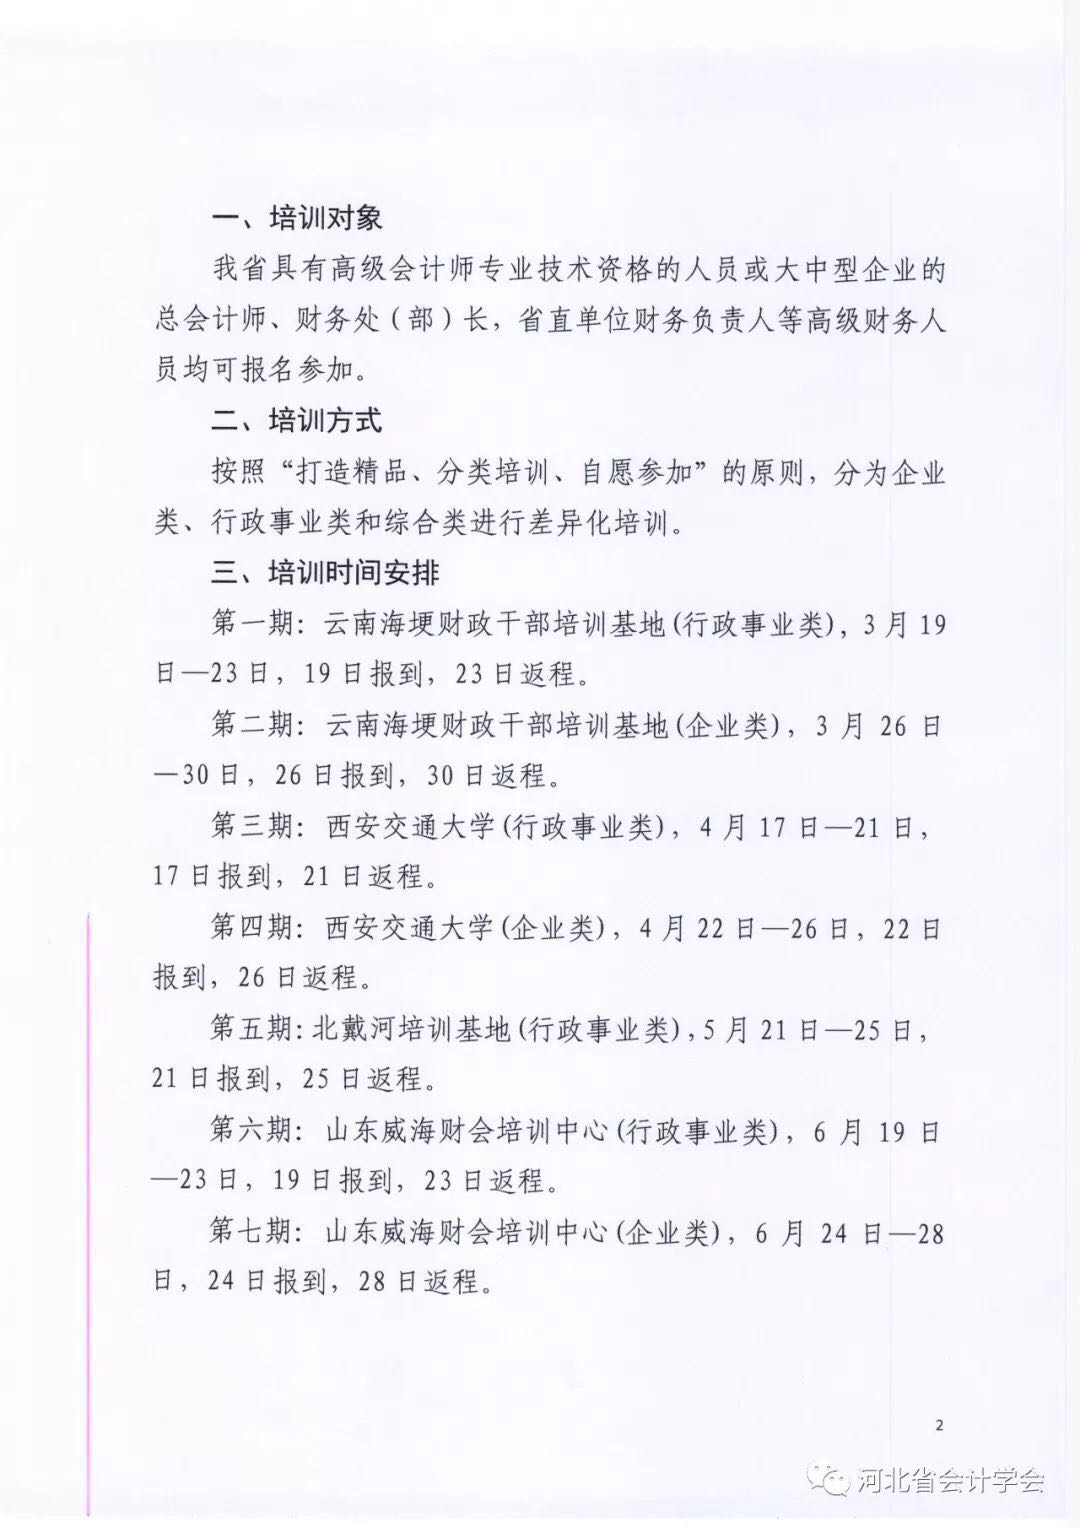 河北省会计学会关于举办2018年度高级会计人